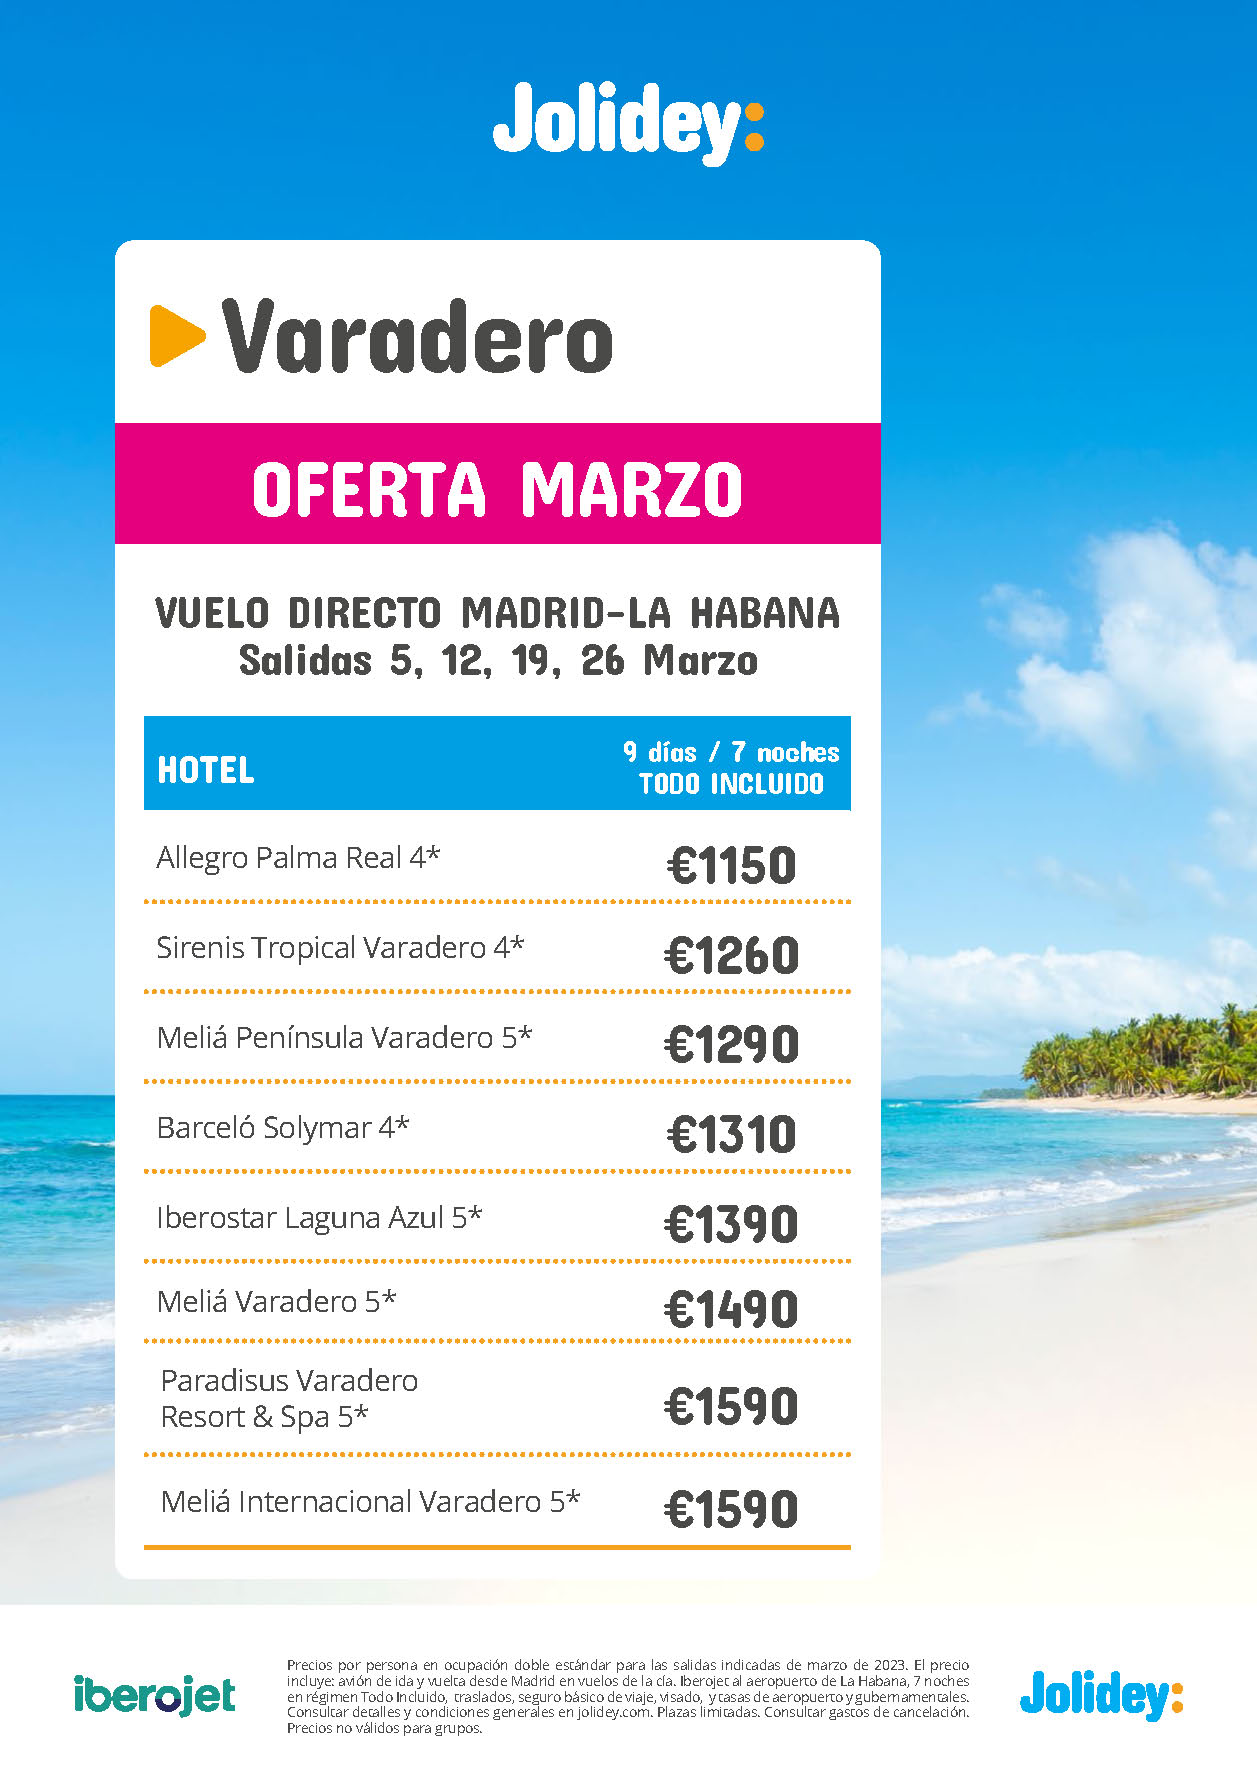 Oferta Jolidey Marzo 2023 Estancia en Varadero Cuba 9 dias Todo Incluido salida en vuelo directo desde Madrid